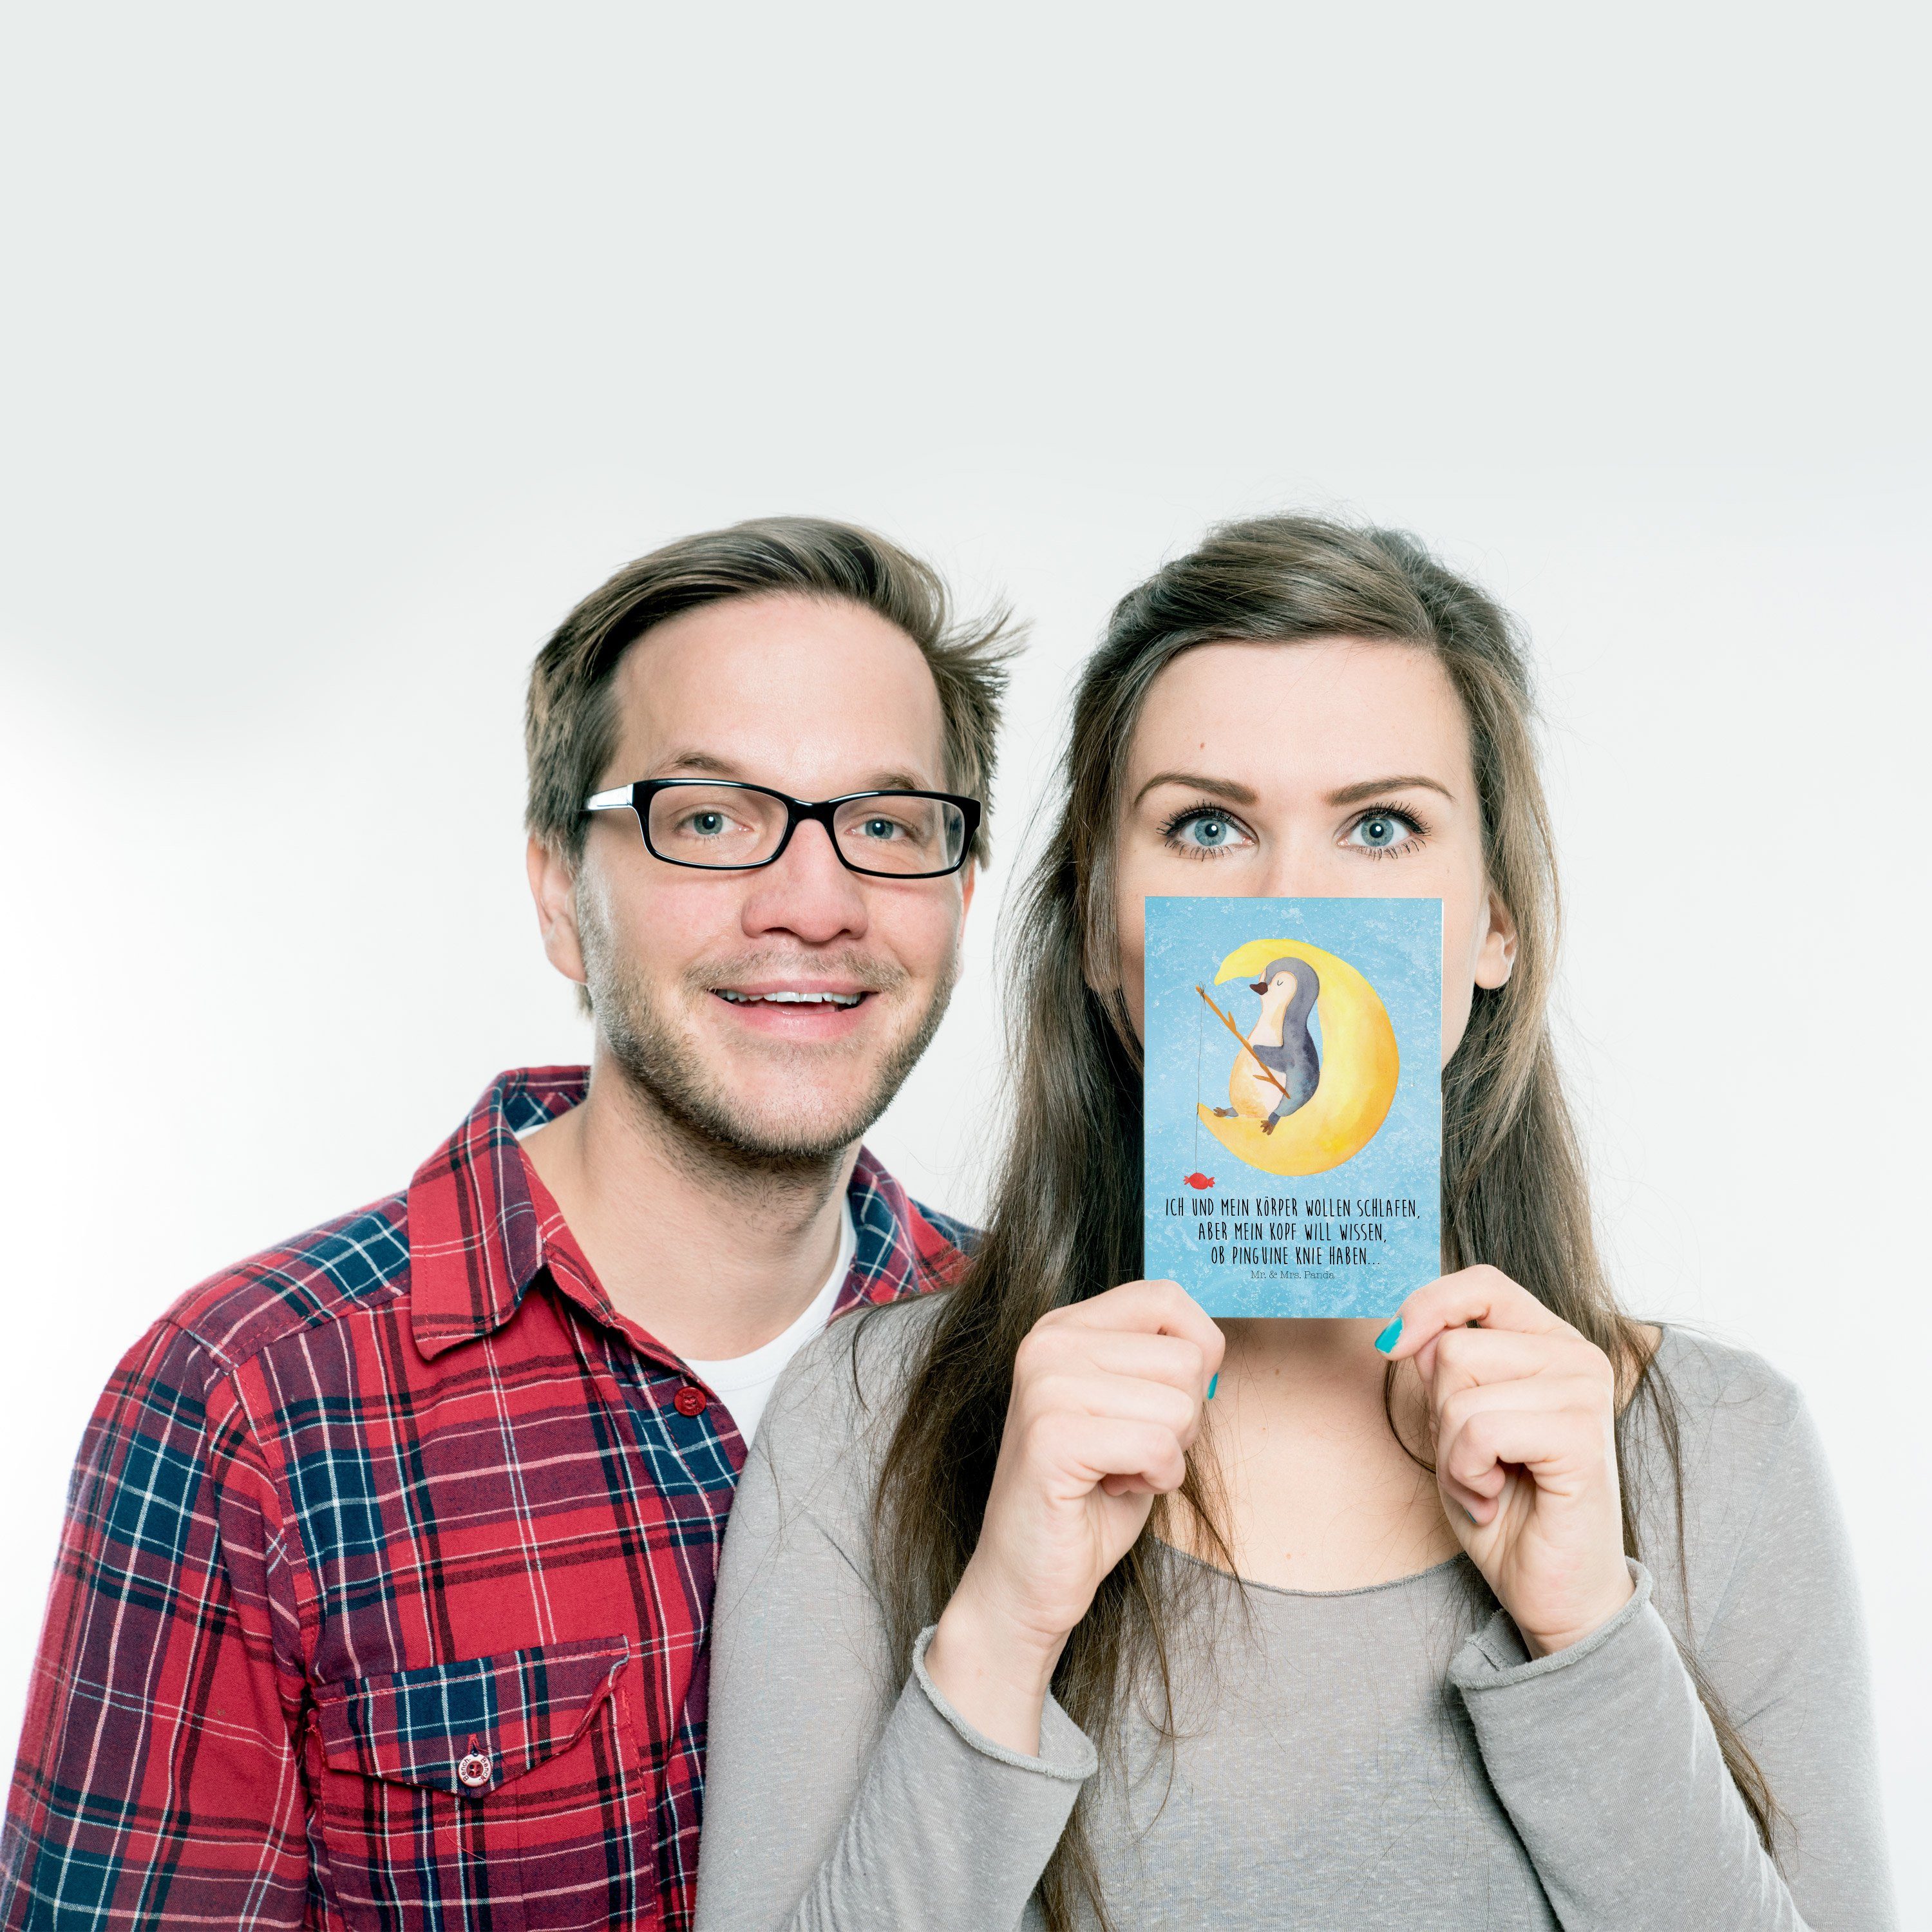 Mr. & Mrs. Karte, Geschenk, Pinguin Mond - Panda Postkarte - Eisblau Einladungska Geschenkkarte